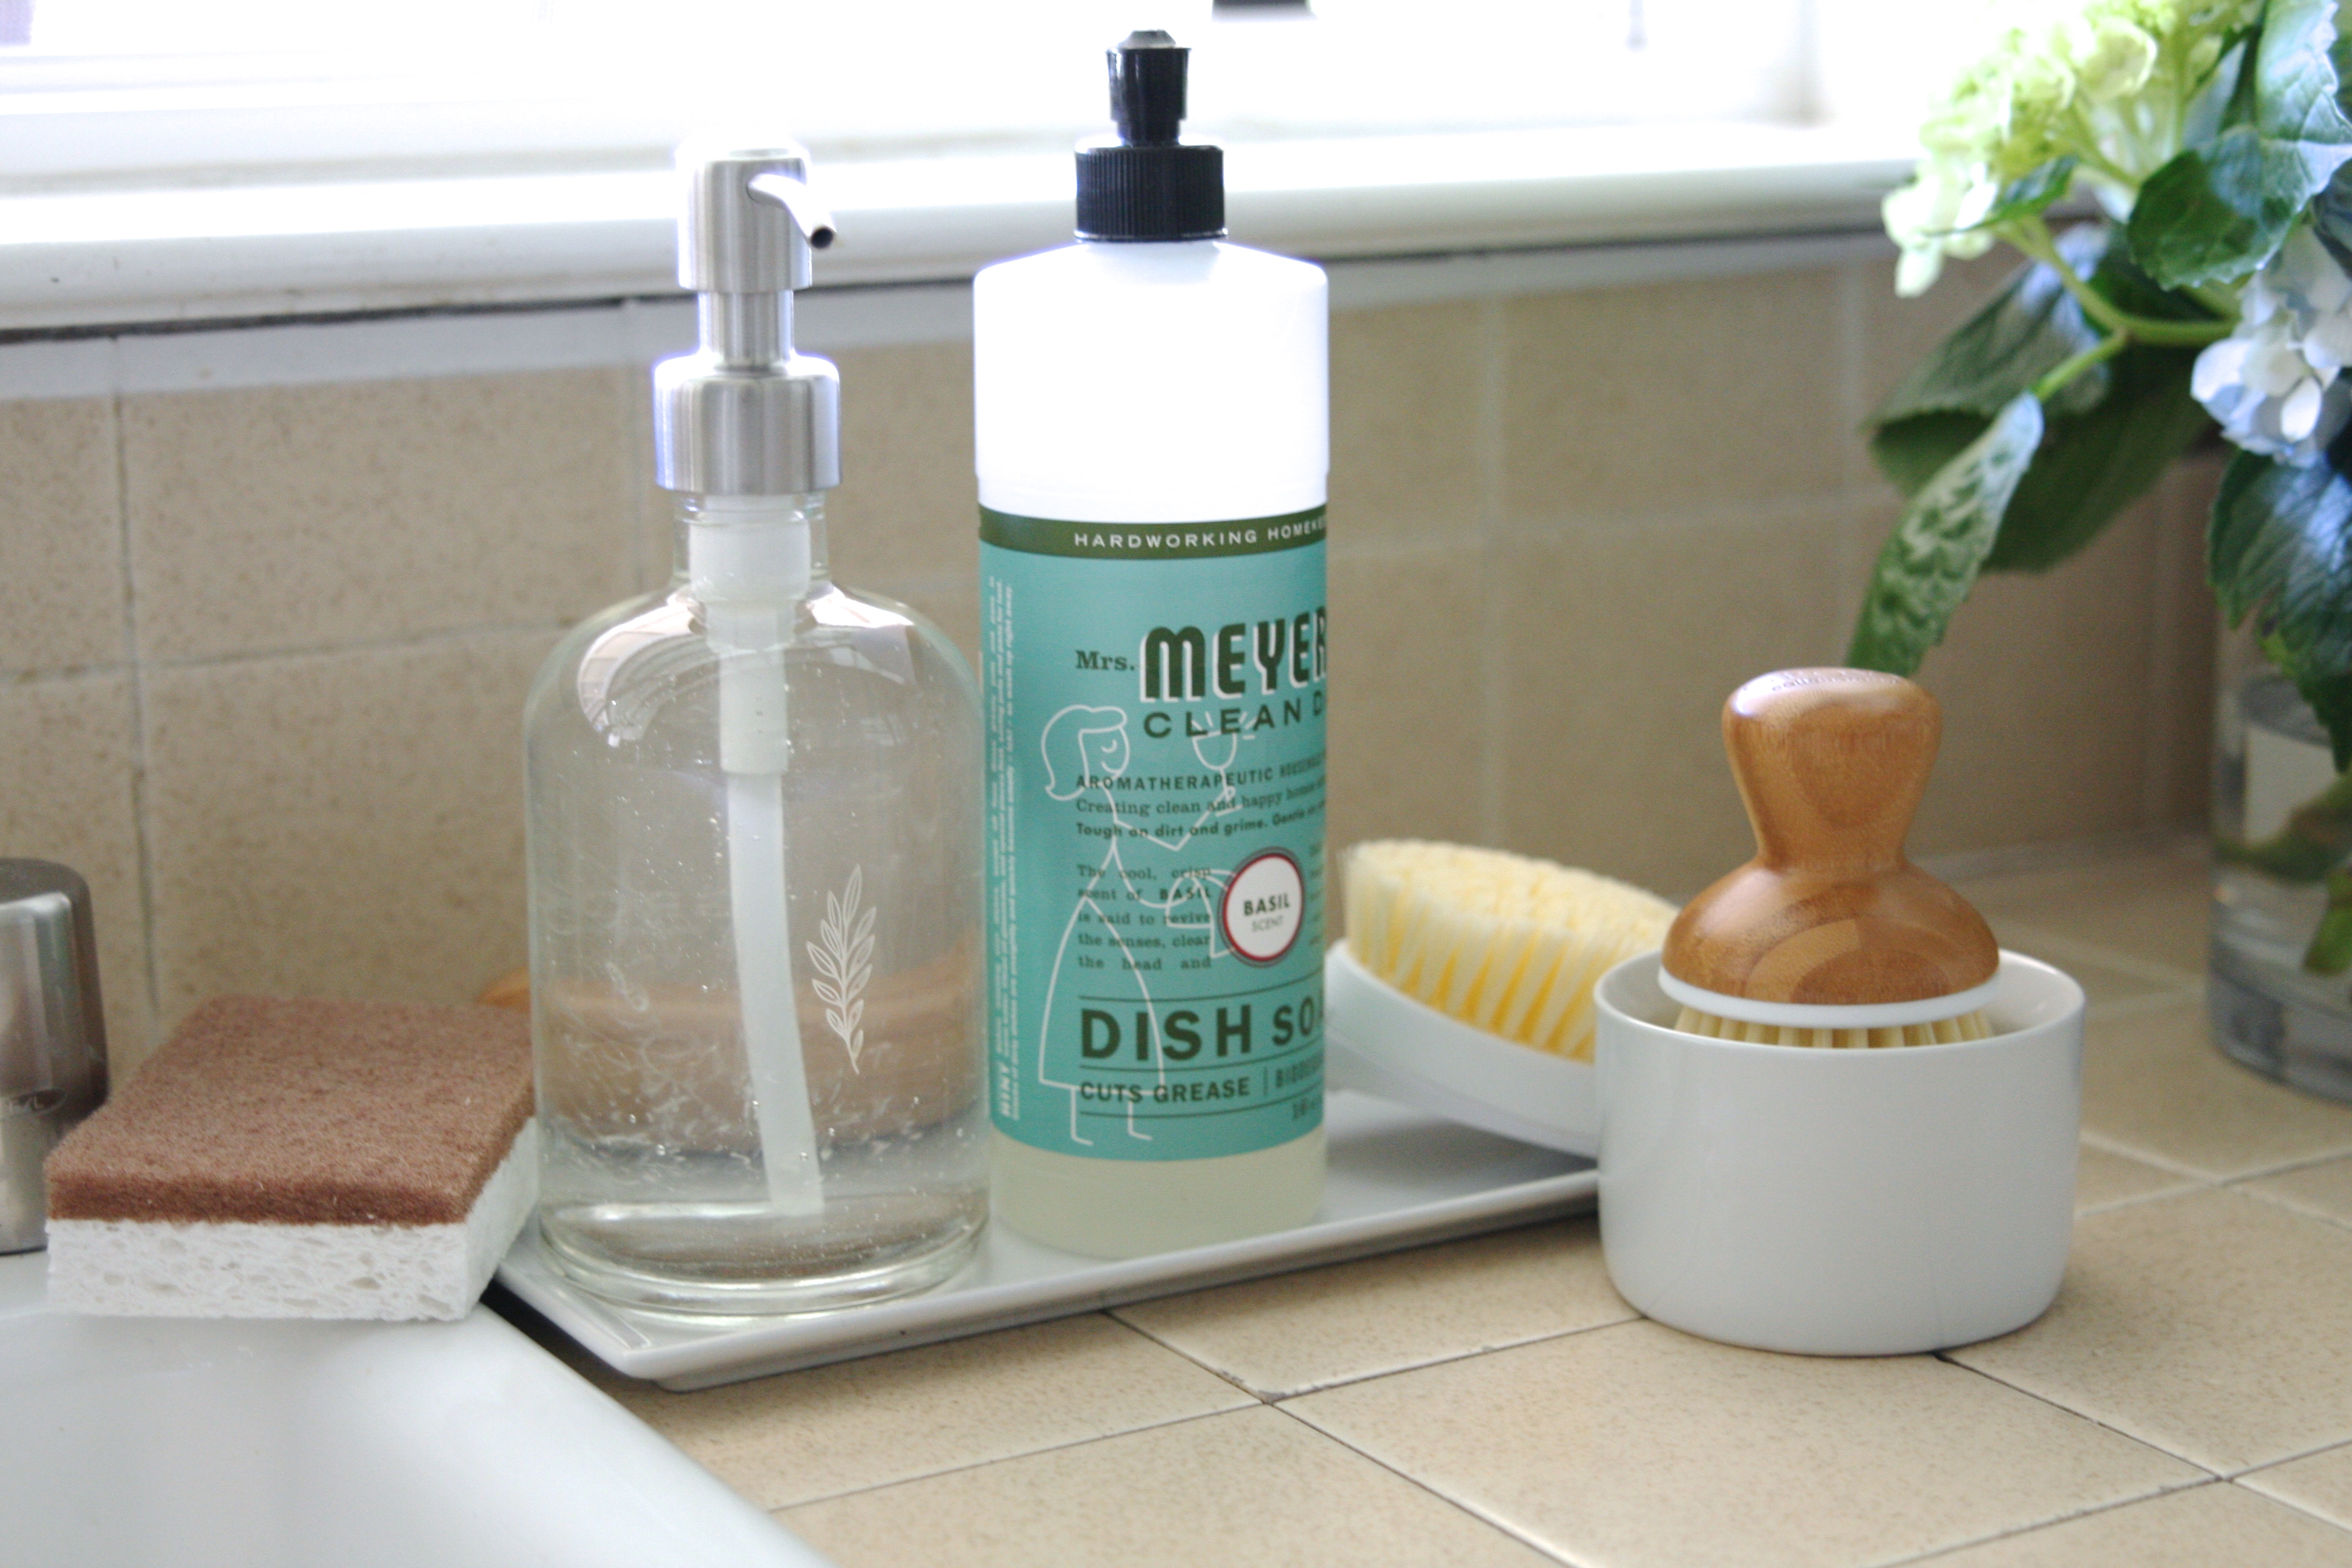 Grove Co. Bubble Up Dish Soap Dispenser & Brush Set